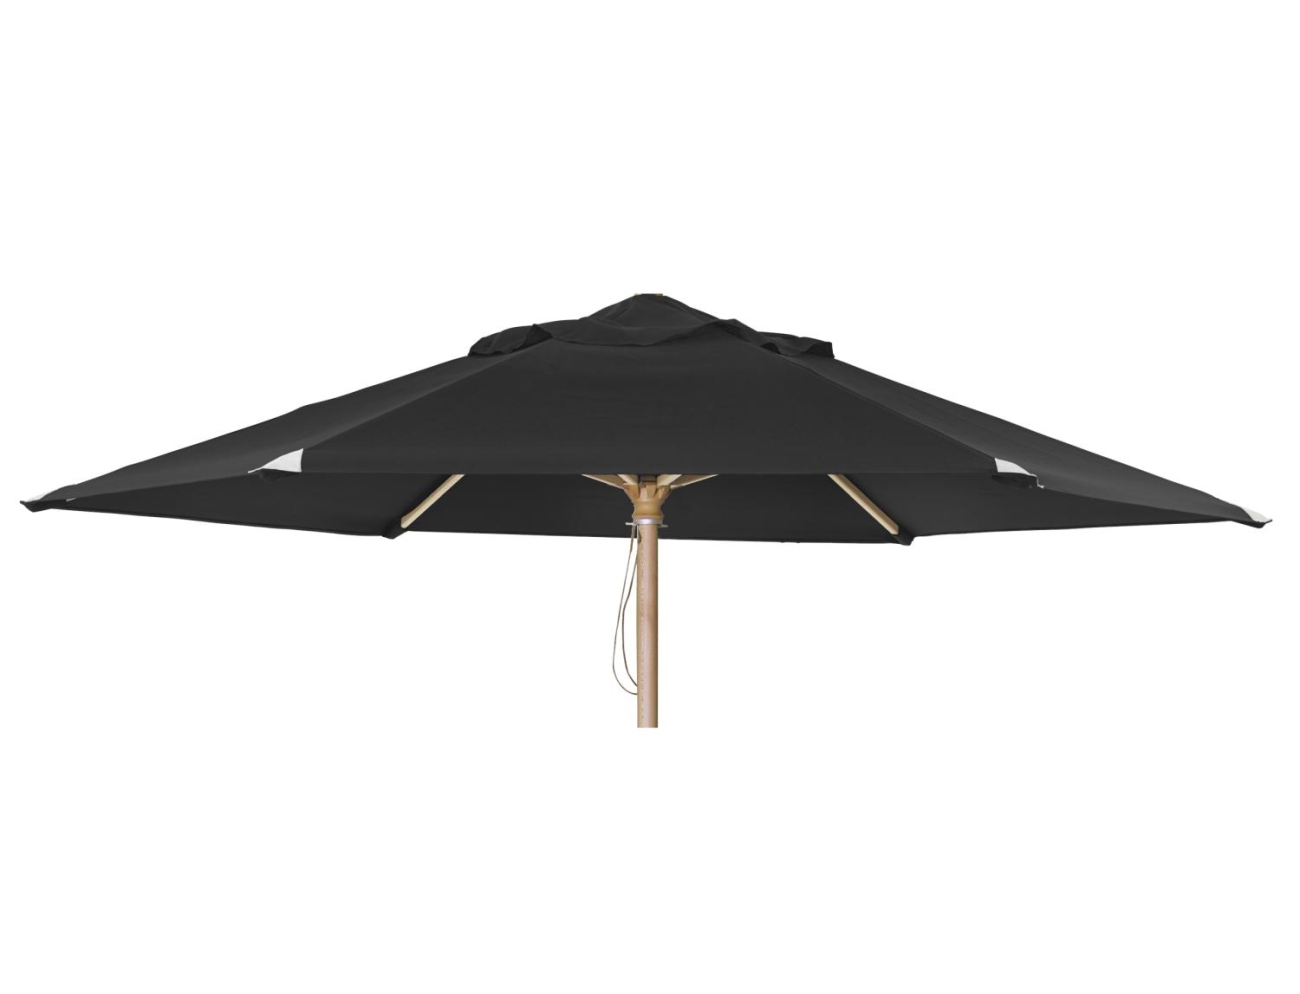 Der Sonnenschirm Reggio überzeugt mit seinem modernen Design. Gefertigt wurde er aus Kunstfasern, welcher einen schwarzen Farbton besitzt. Das Gestell ist aus Buchenholz und hat eine natürliche Farbe. Der Schirm hat einen Durchmesser von 300 cm.